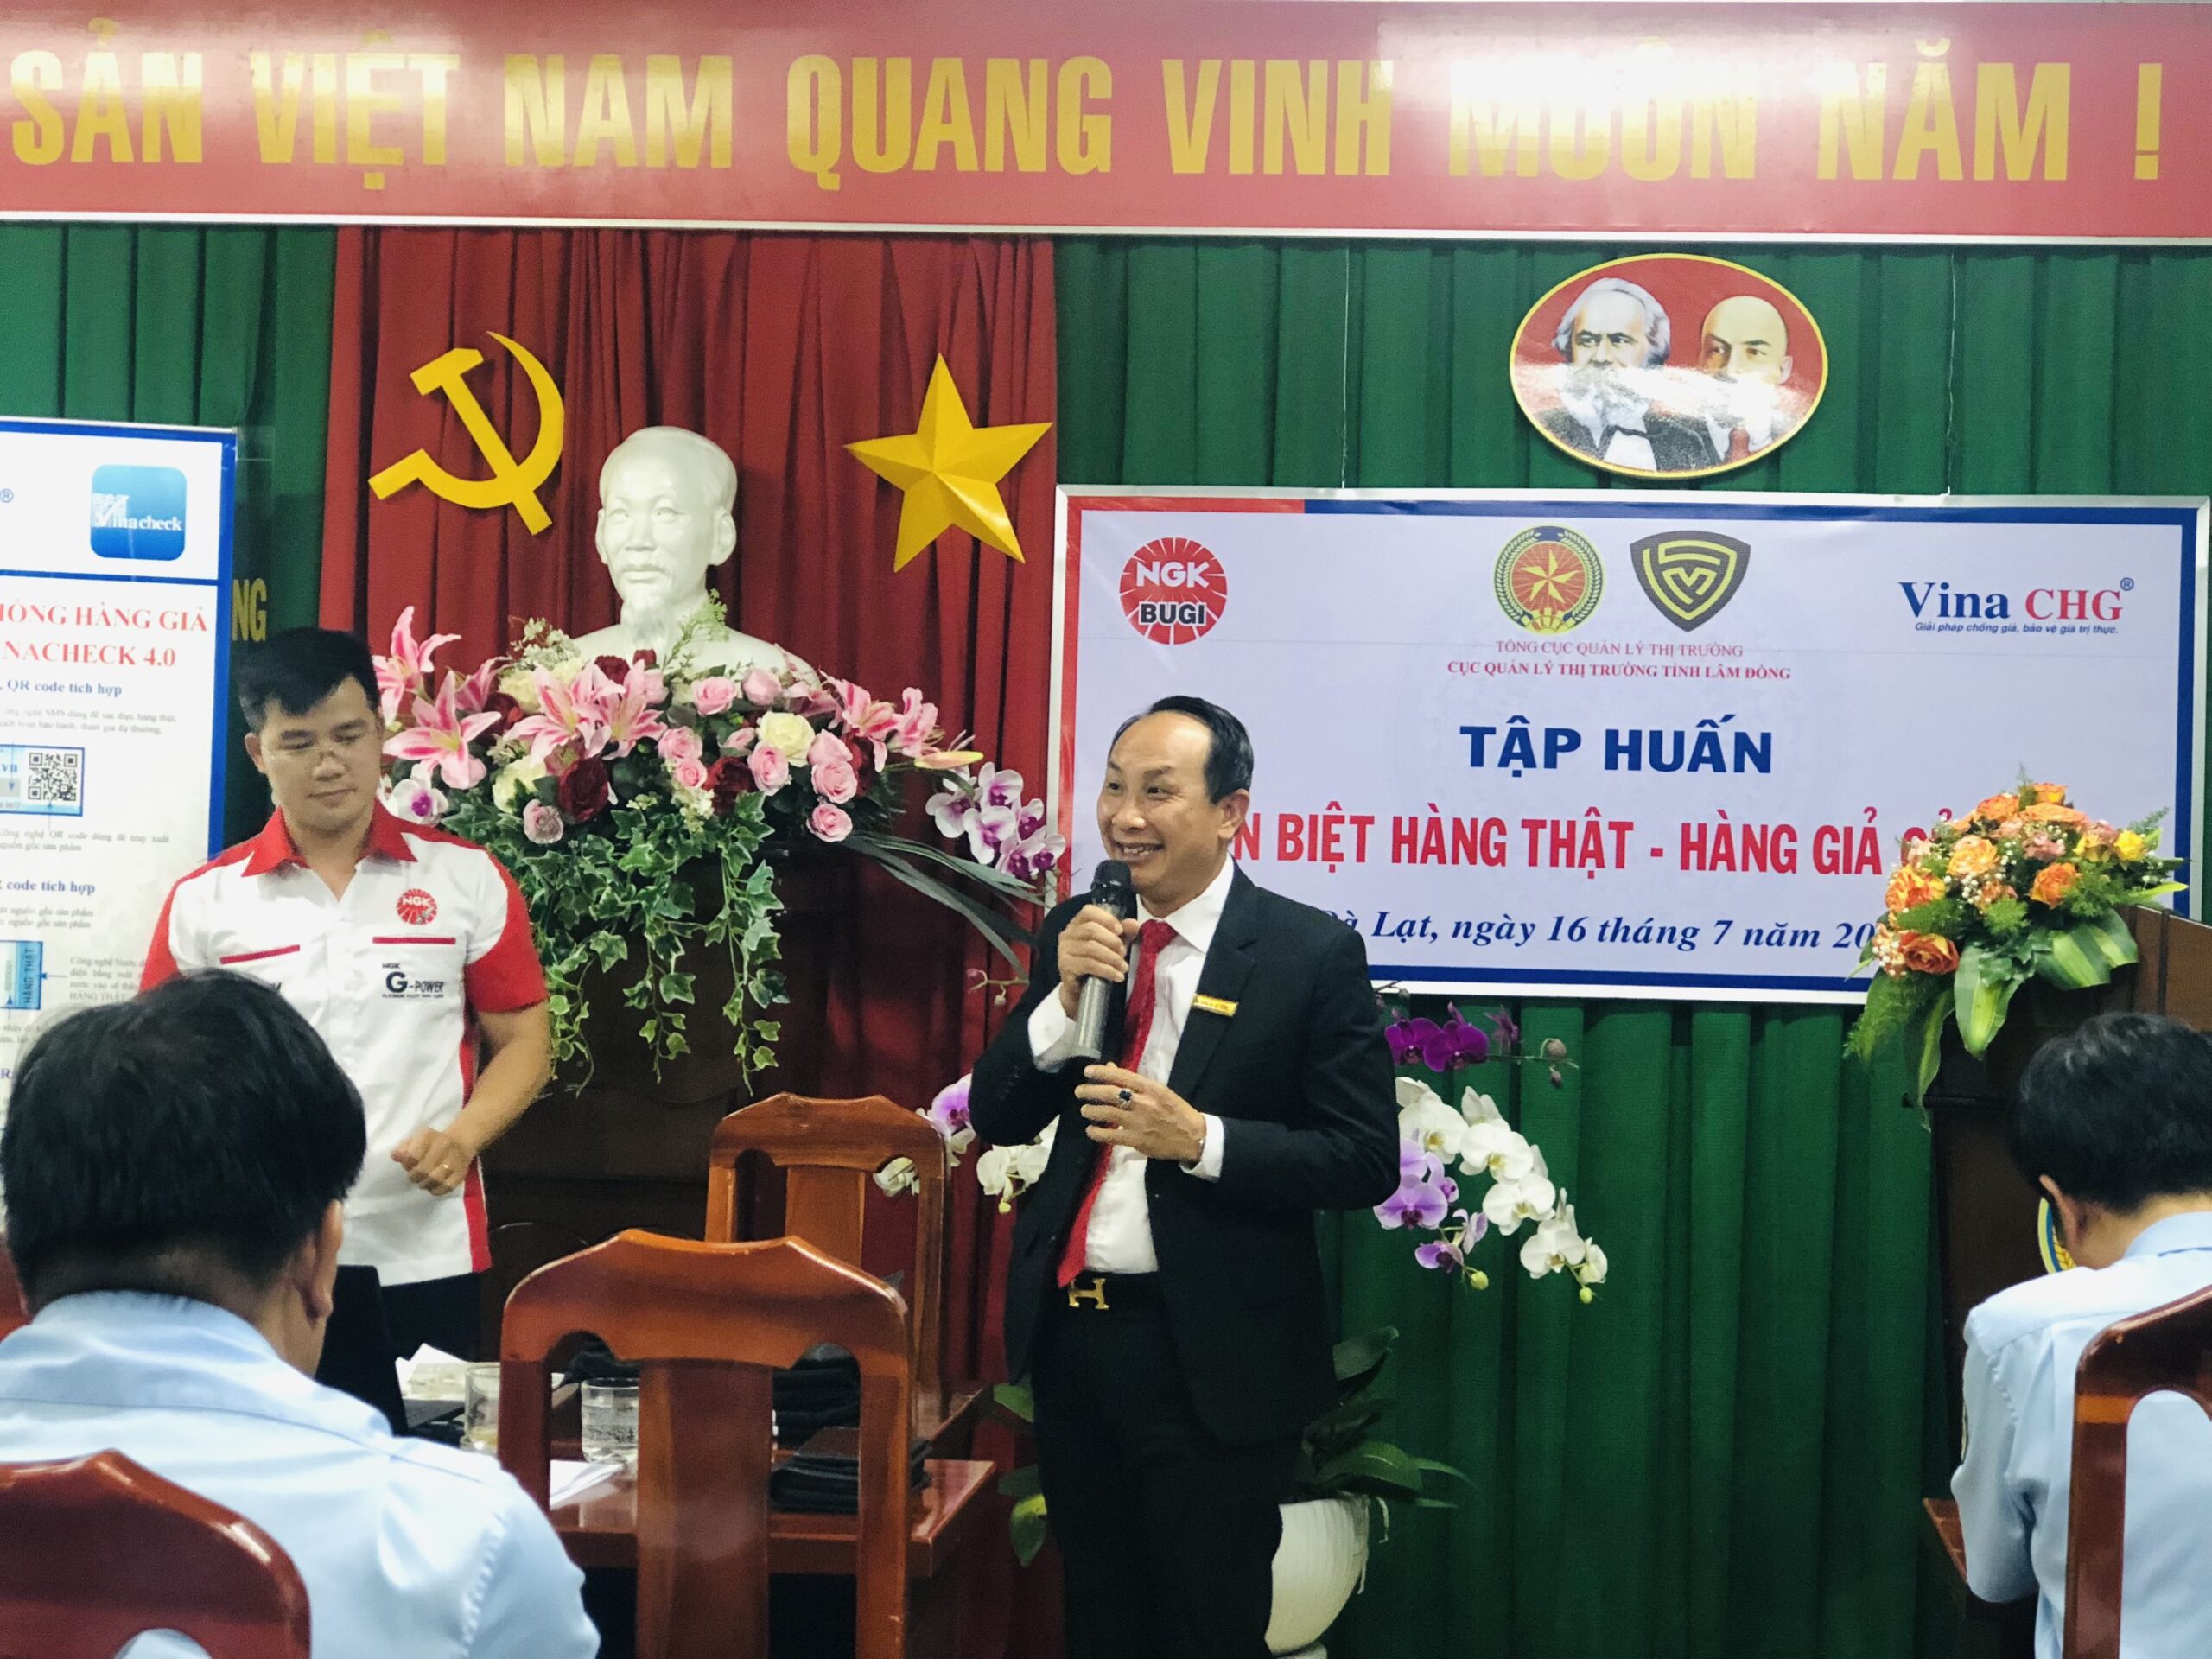 Ông Nguyễn Viết Hồng TGĐ Vina CHG đánh giá cao nỗ lực của NGK trong công tác chống hàng giả và chia sẻ về các giải pháp chống giả hiện nay.